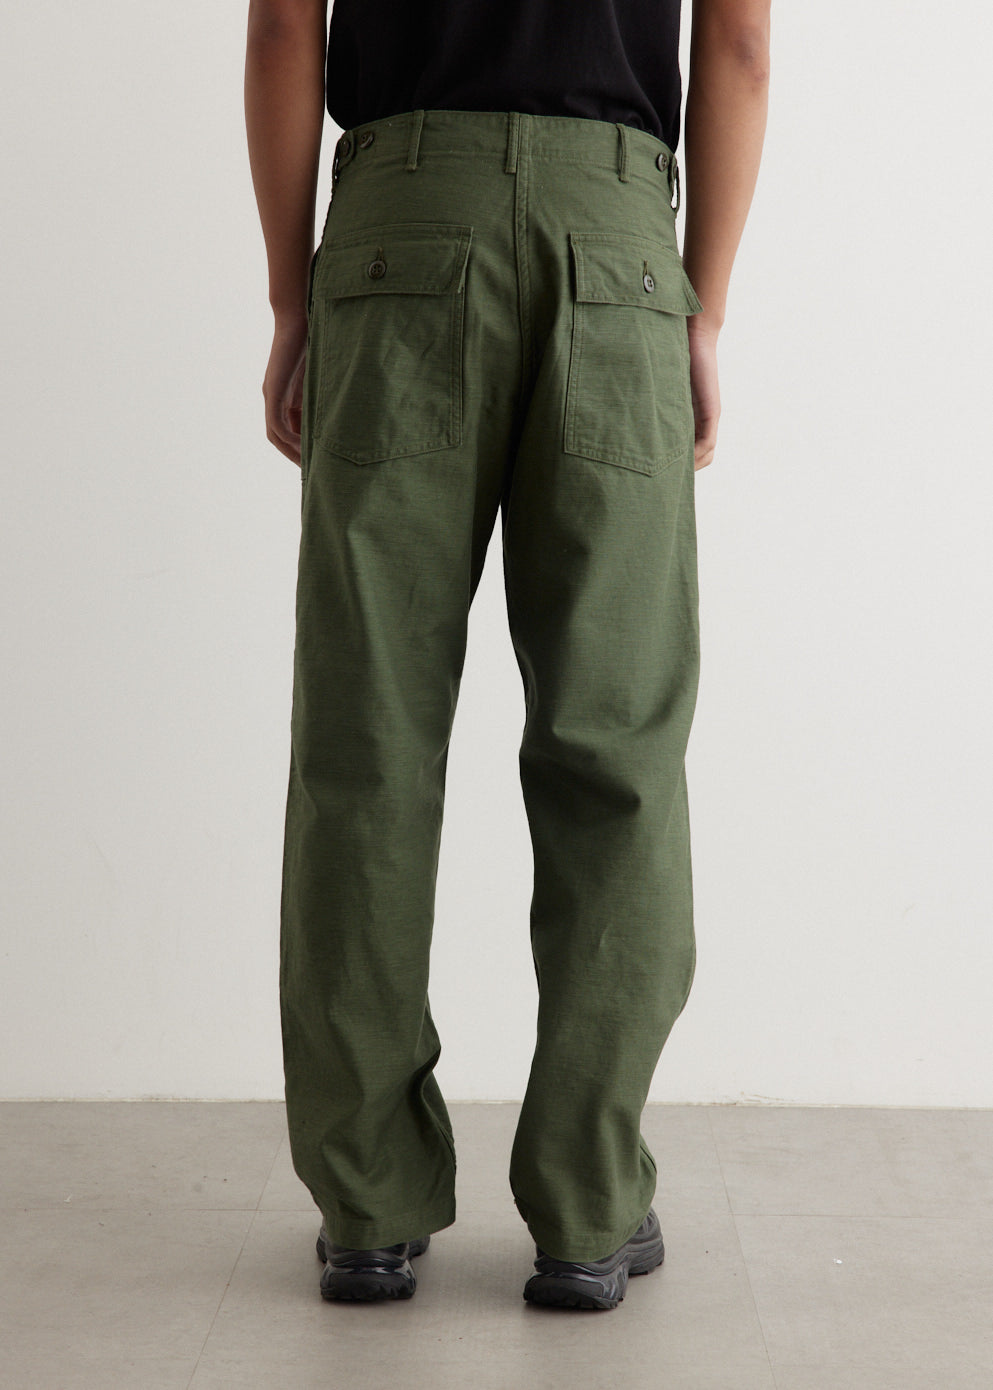 U.S. Army Fatigue Pants